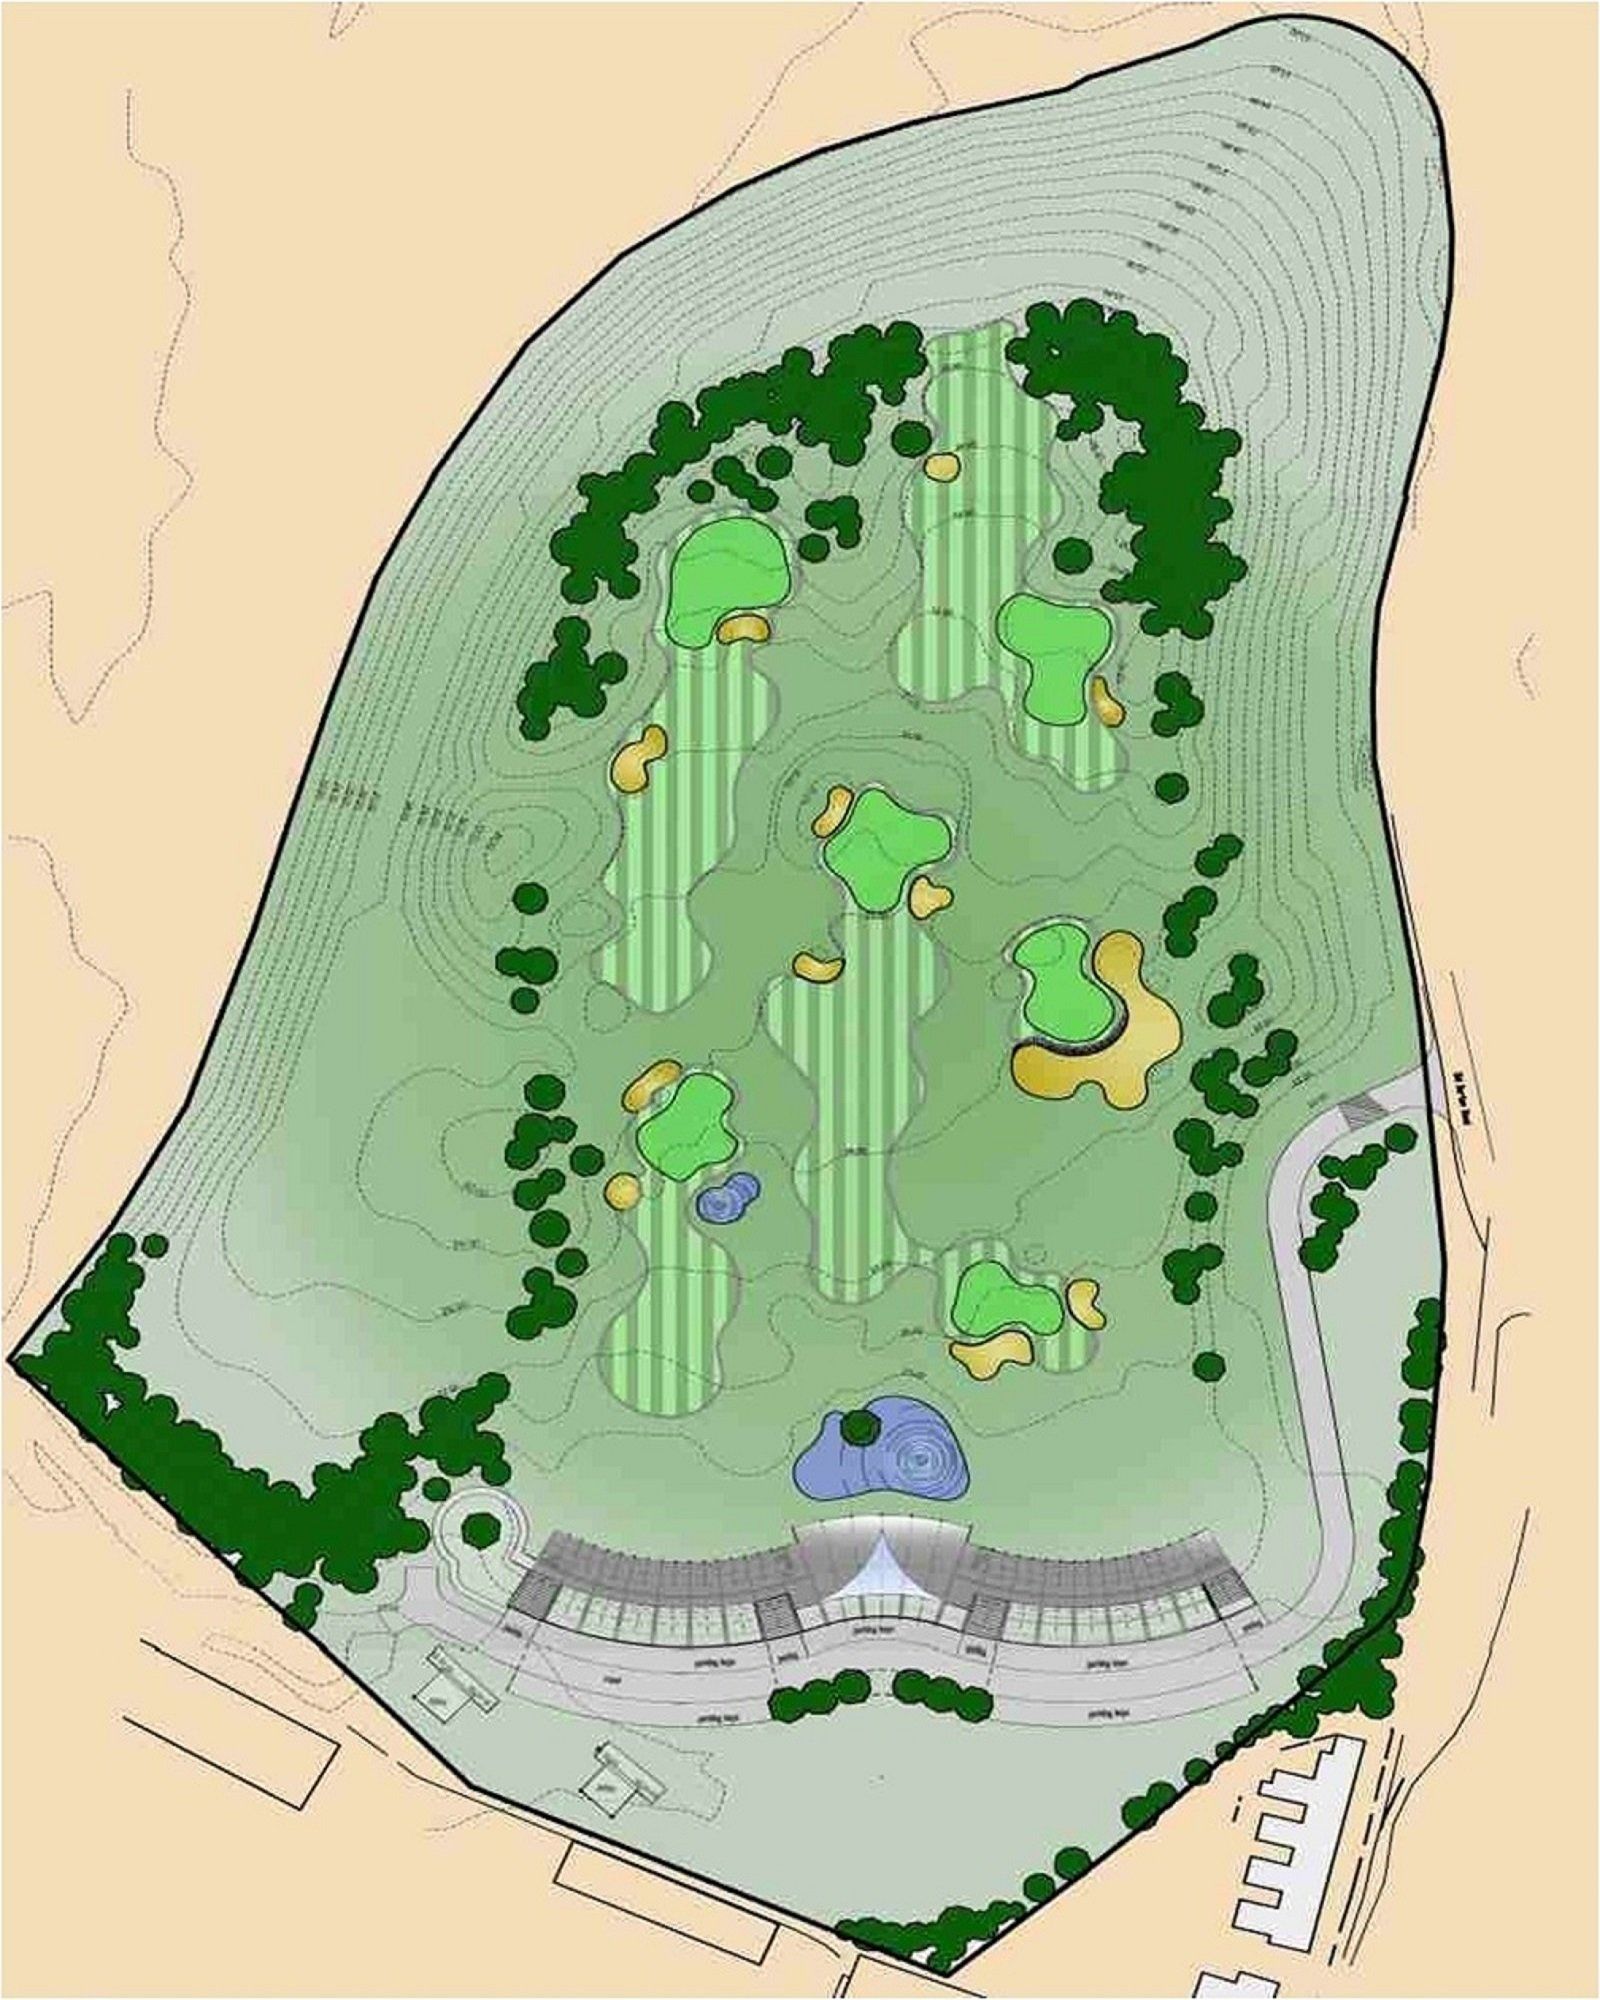 Golf range layout plan